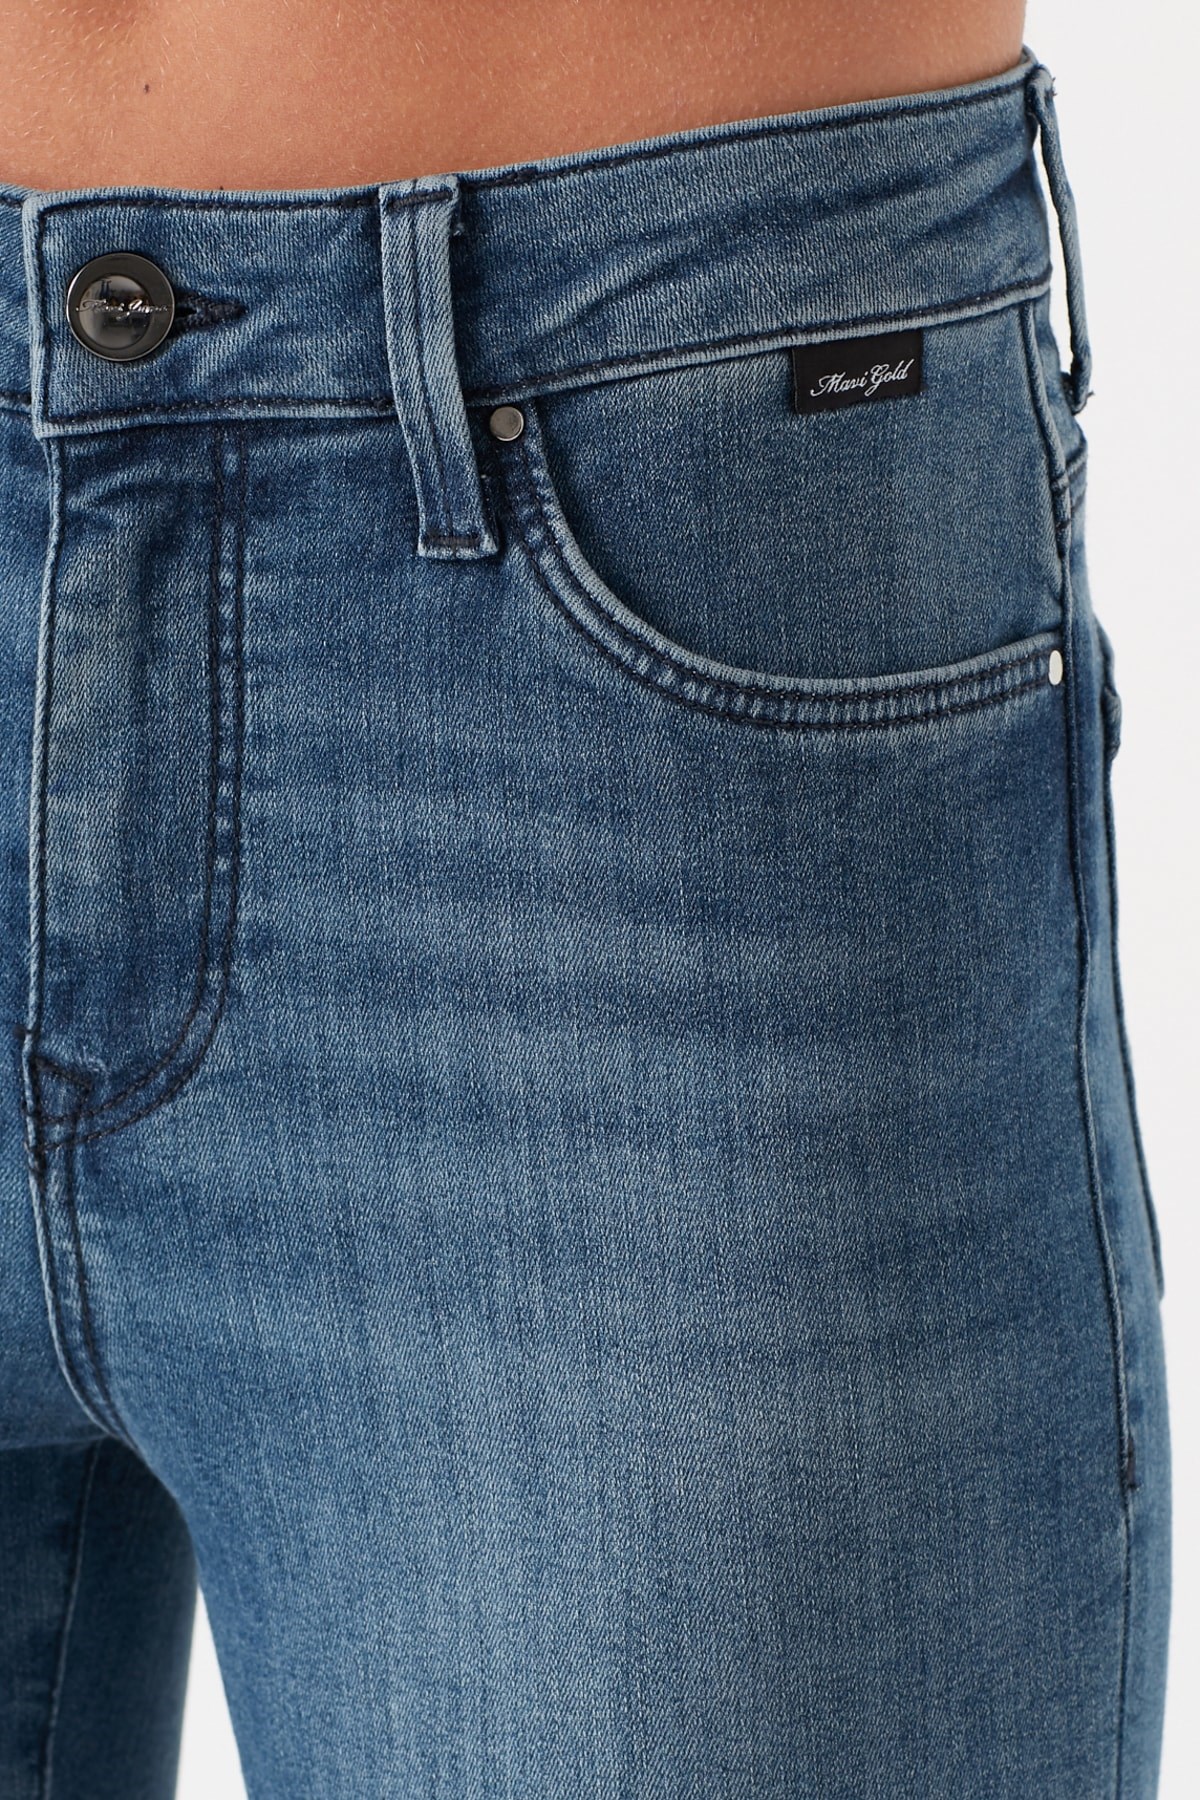 Mavi Jeans Kadın Pantolon 100328-31061 